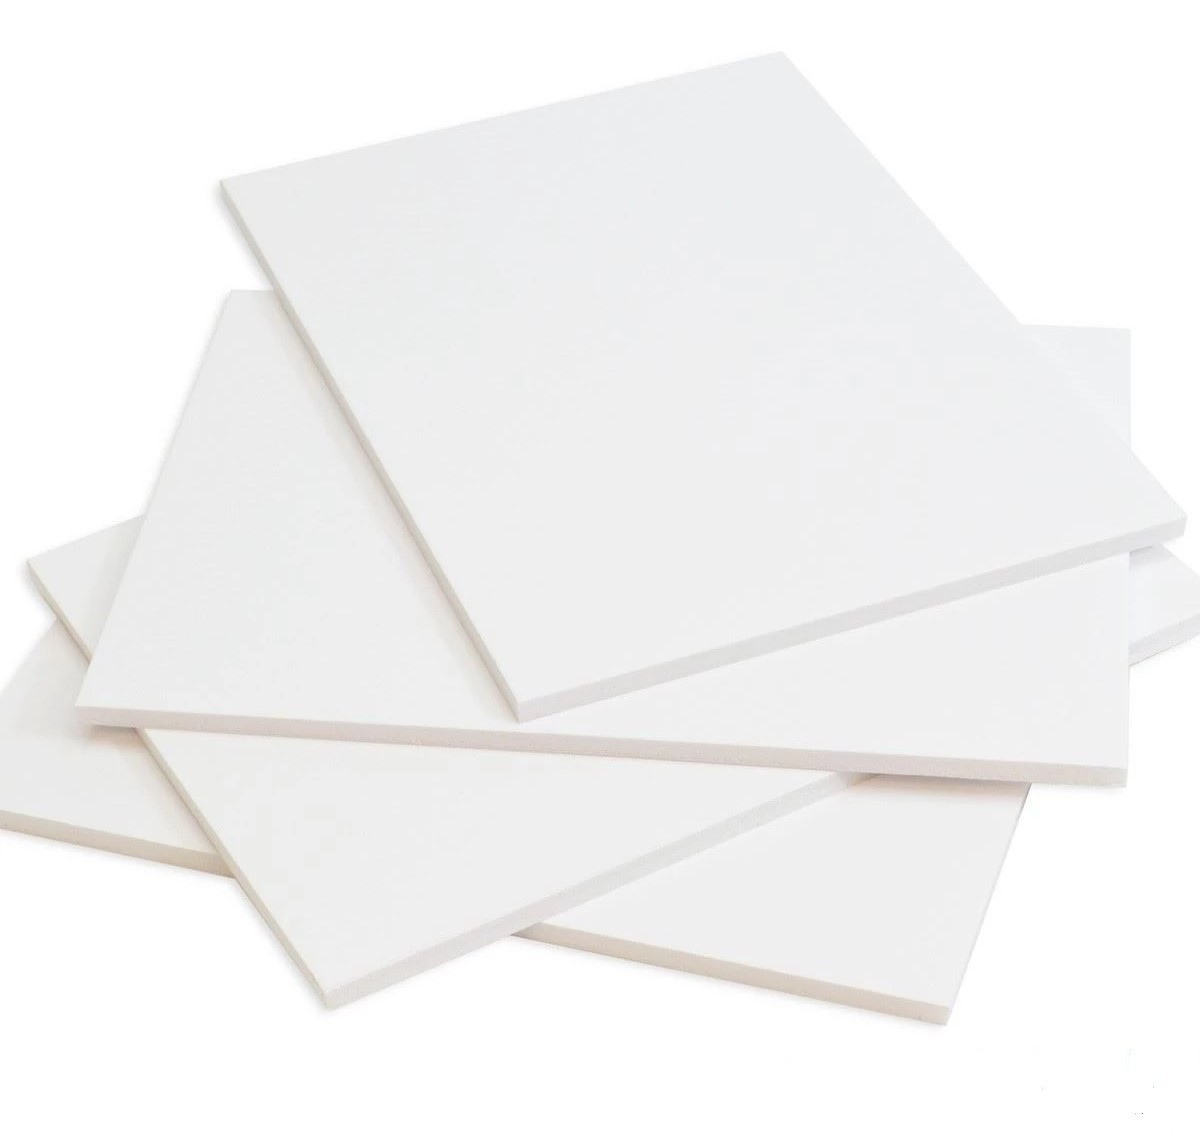 White Foam Core Board FOAMBOARD 5mm A4-20 sheet pack 